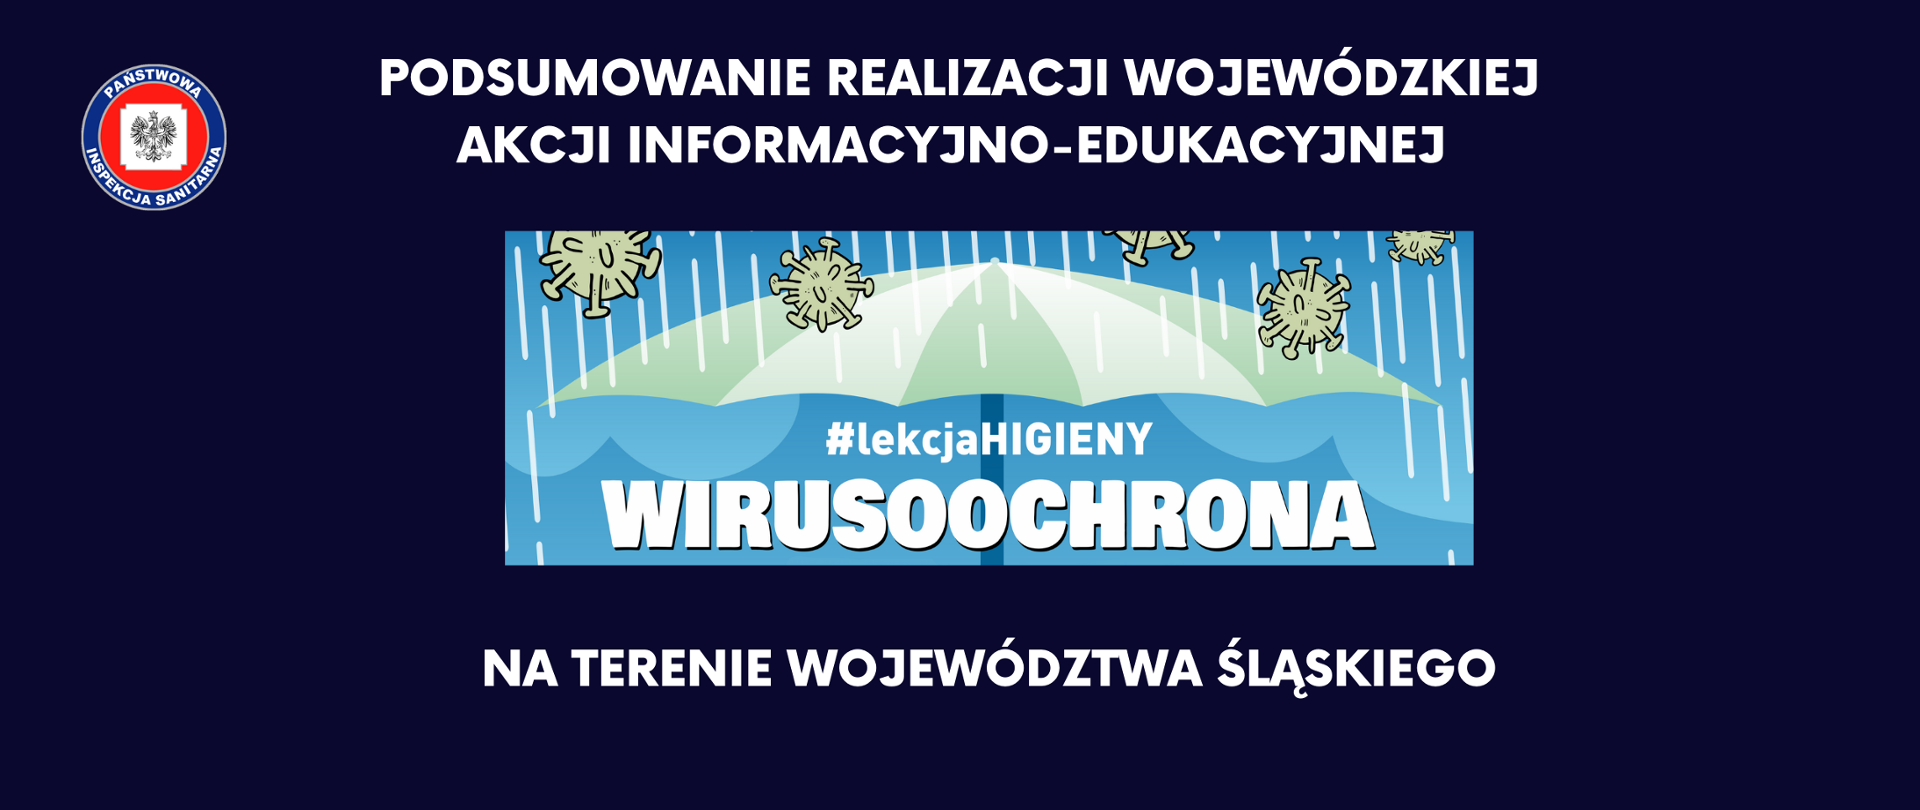 Baner informacyjny na granatowym tle z logo Państwowej Inspekcji Sanitarnej i logo wojewódzkiej akcji "Wirusoochrona" oraz napisem - Podsumowanie realizacji wojewódzkiej akcji informacyjno-edukacyjnej "Wirusoochrona" na terenie województwa śląskiego. 